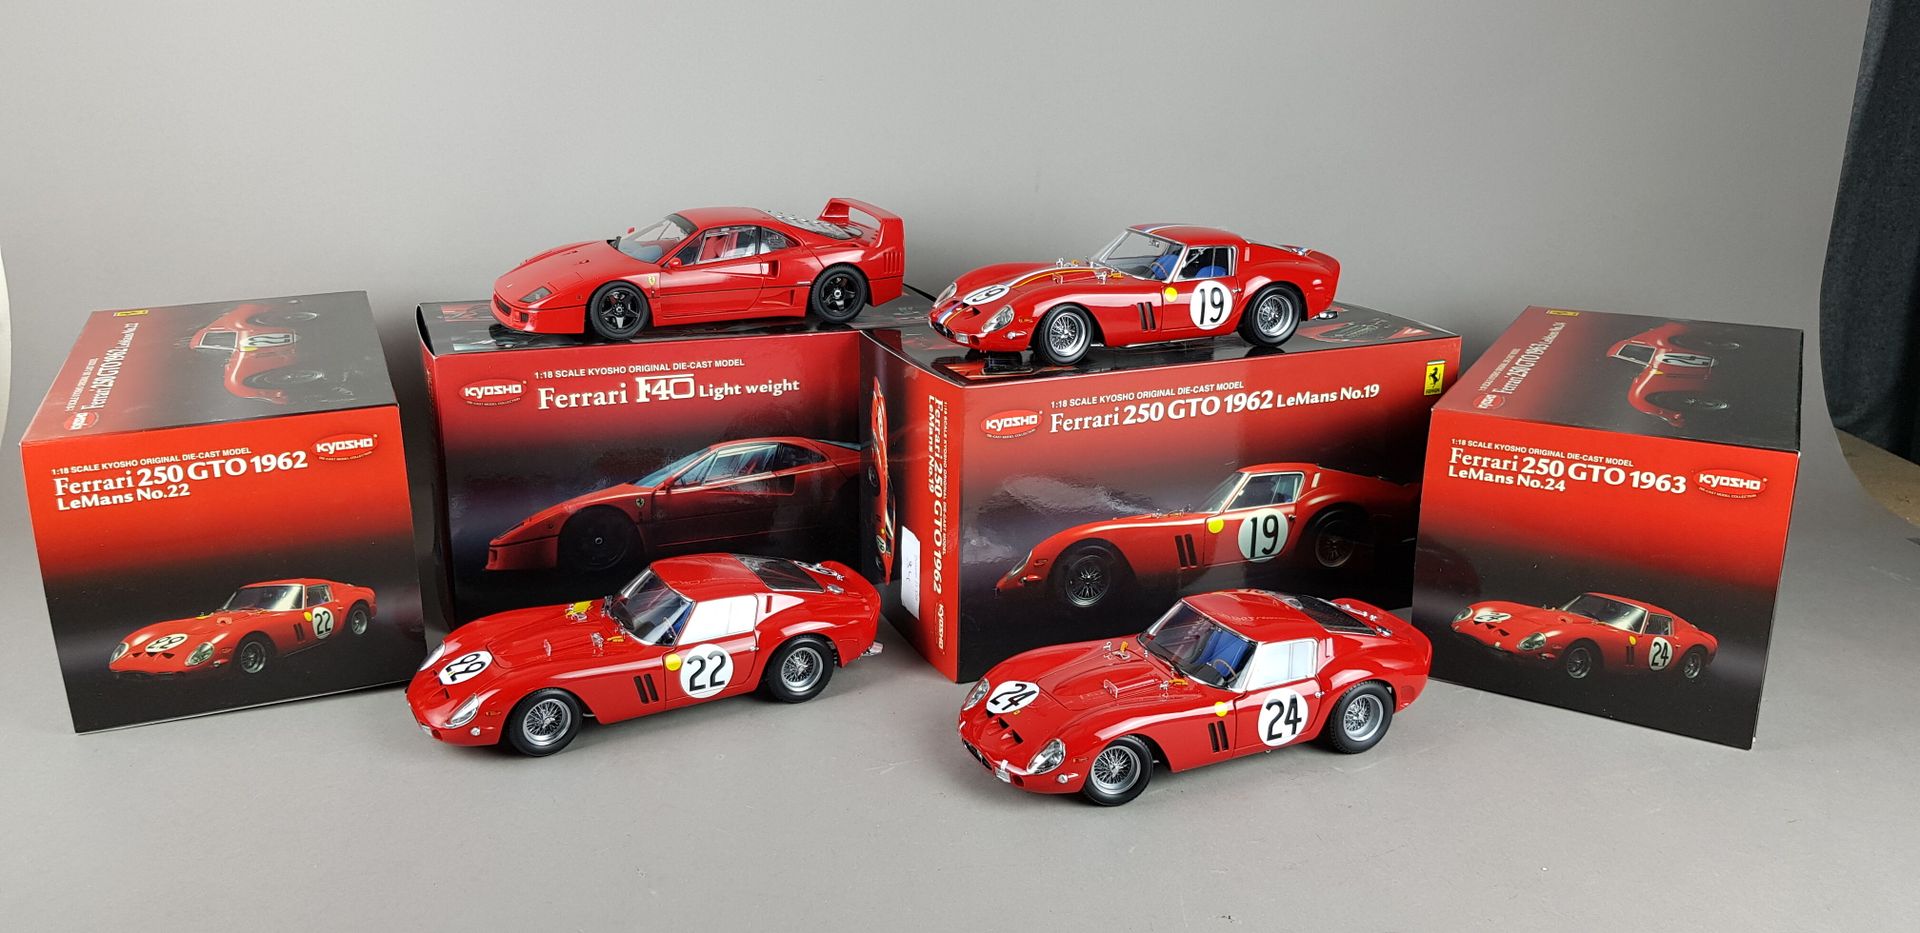 Null KYOSHO - FOUR Ferrari im Maßstab 1:18:

1x F40 Licht Weiß

1x 1962 Le Mans &hellip;